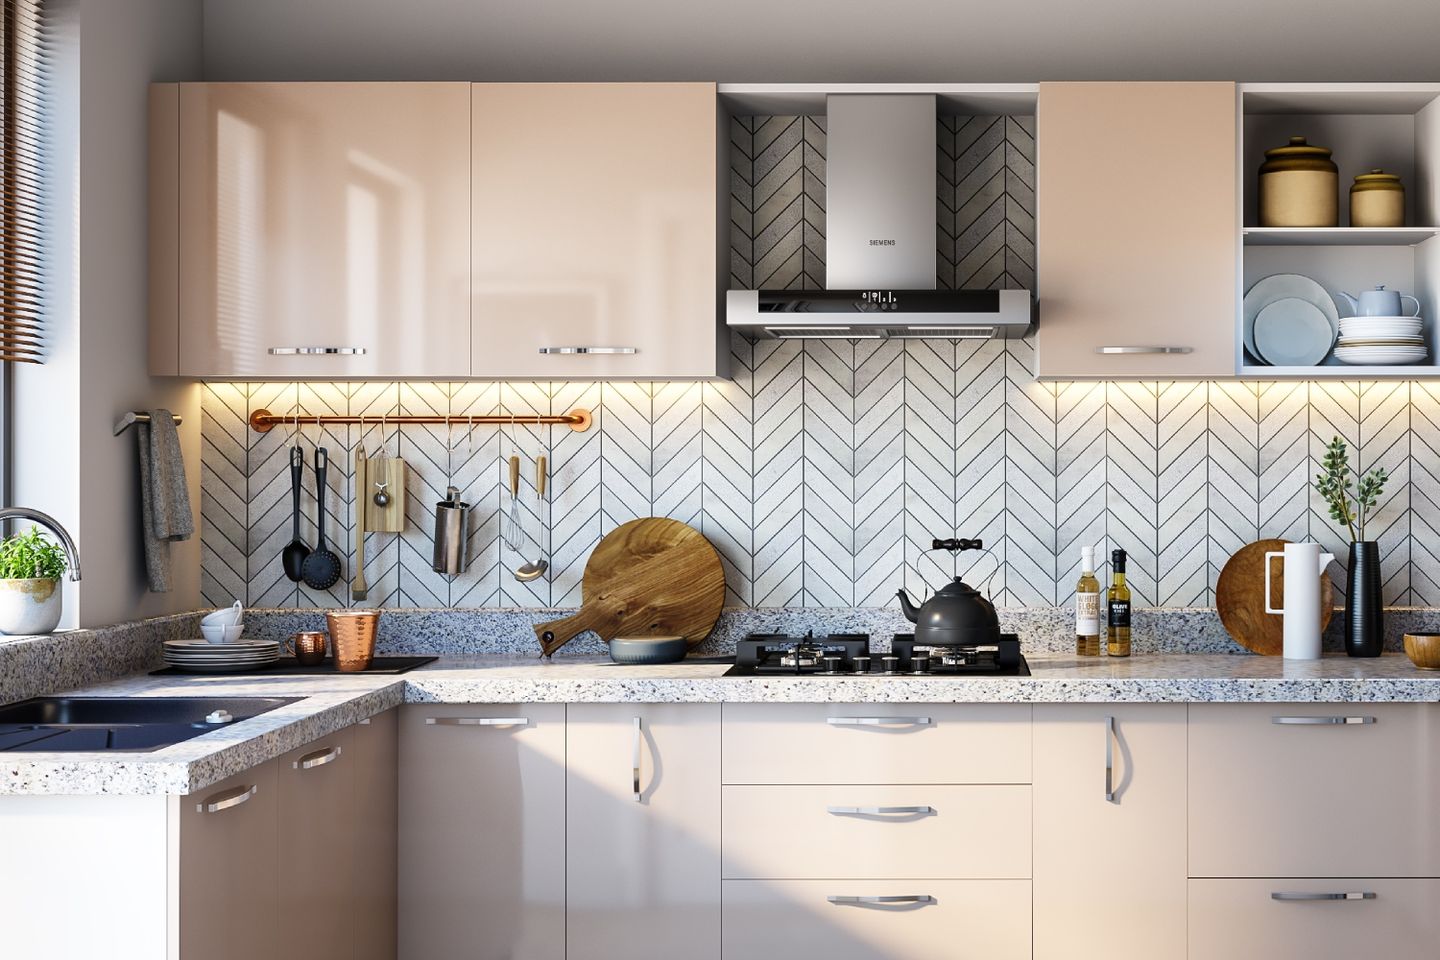 Herringbone Ceramic Kitchen Tile Design In Grey And White - Livspace